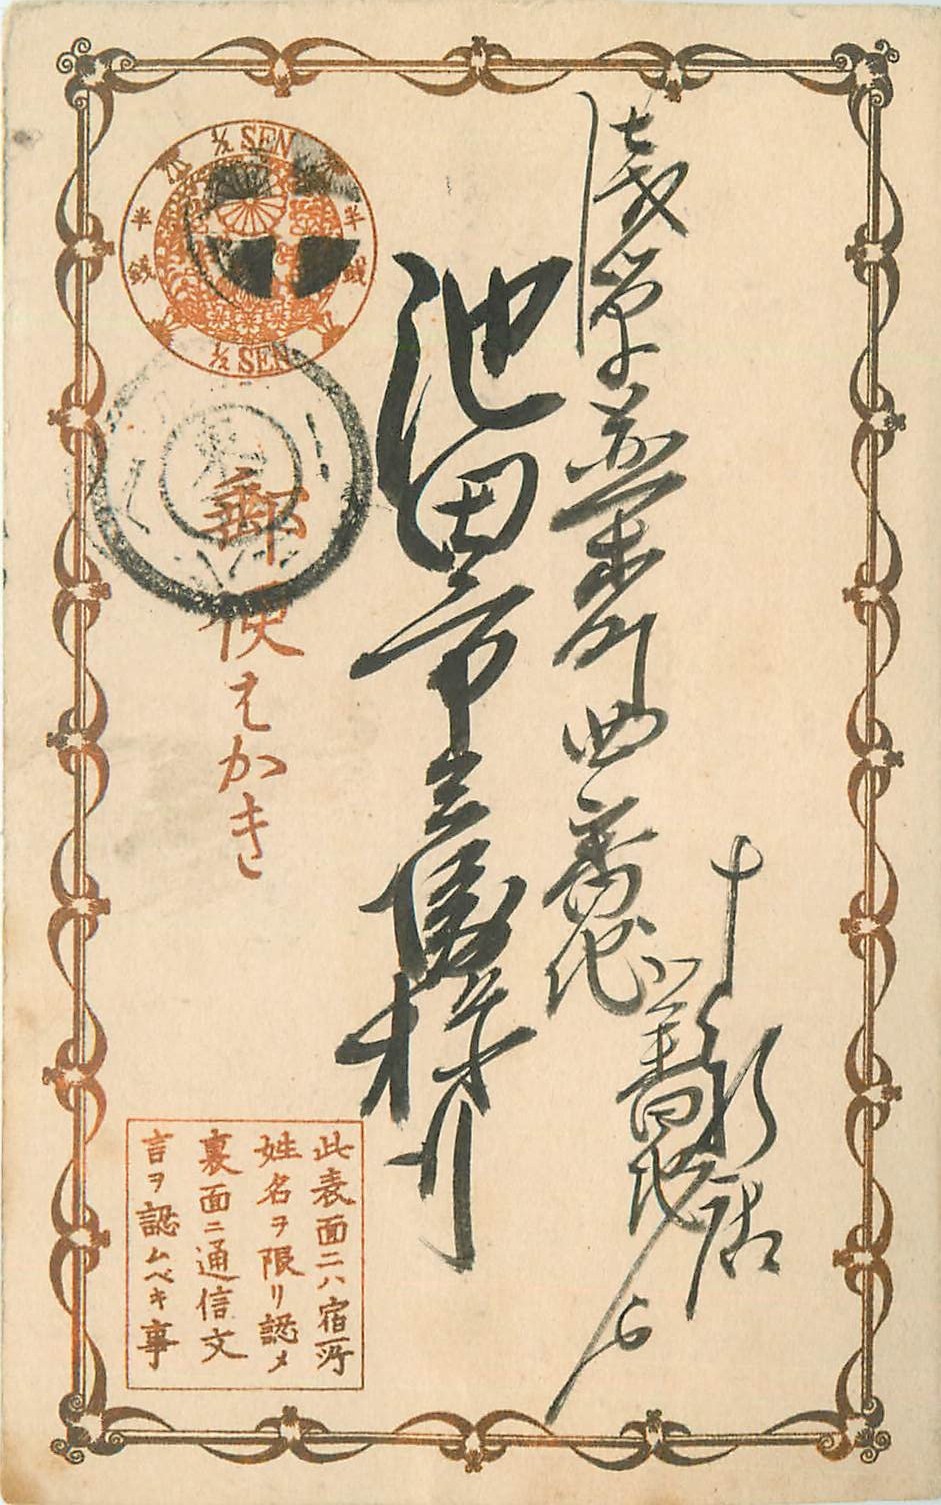 JAPON. Rare Carte Japonnaise vers 1900... Ecriture et pré-timbrée 1/2 Sen